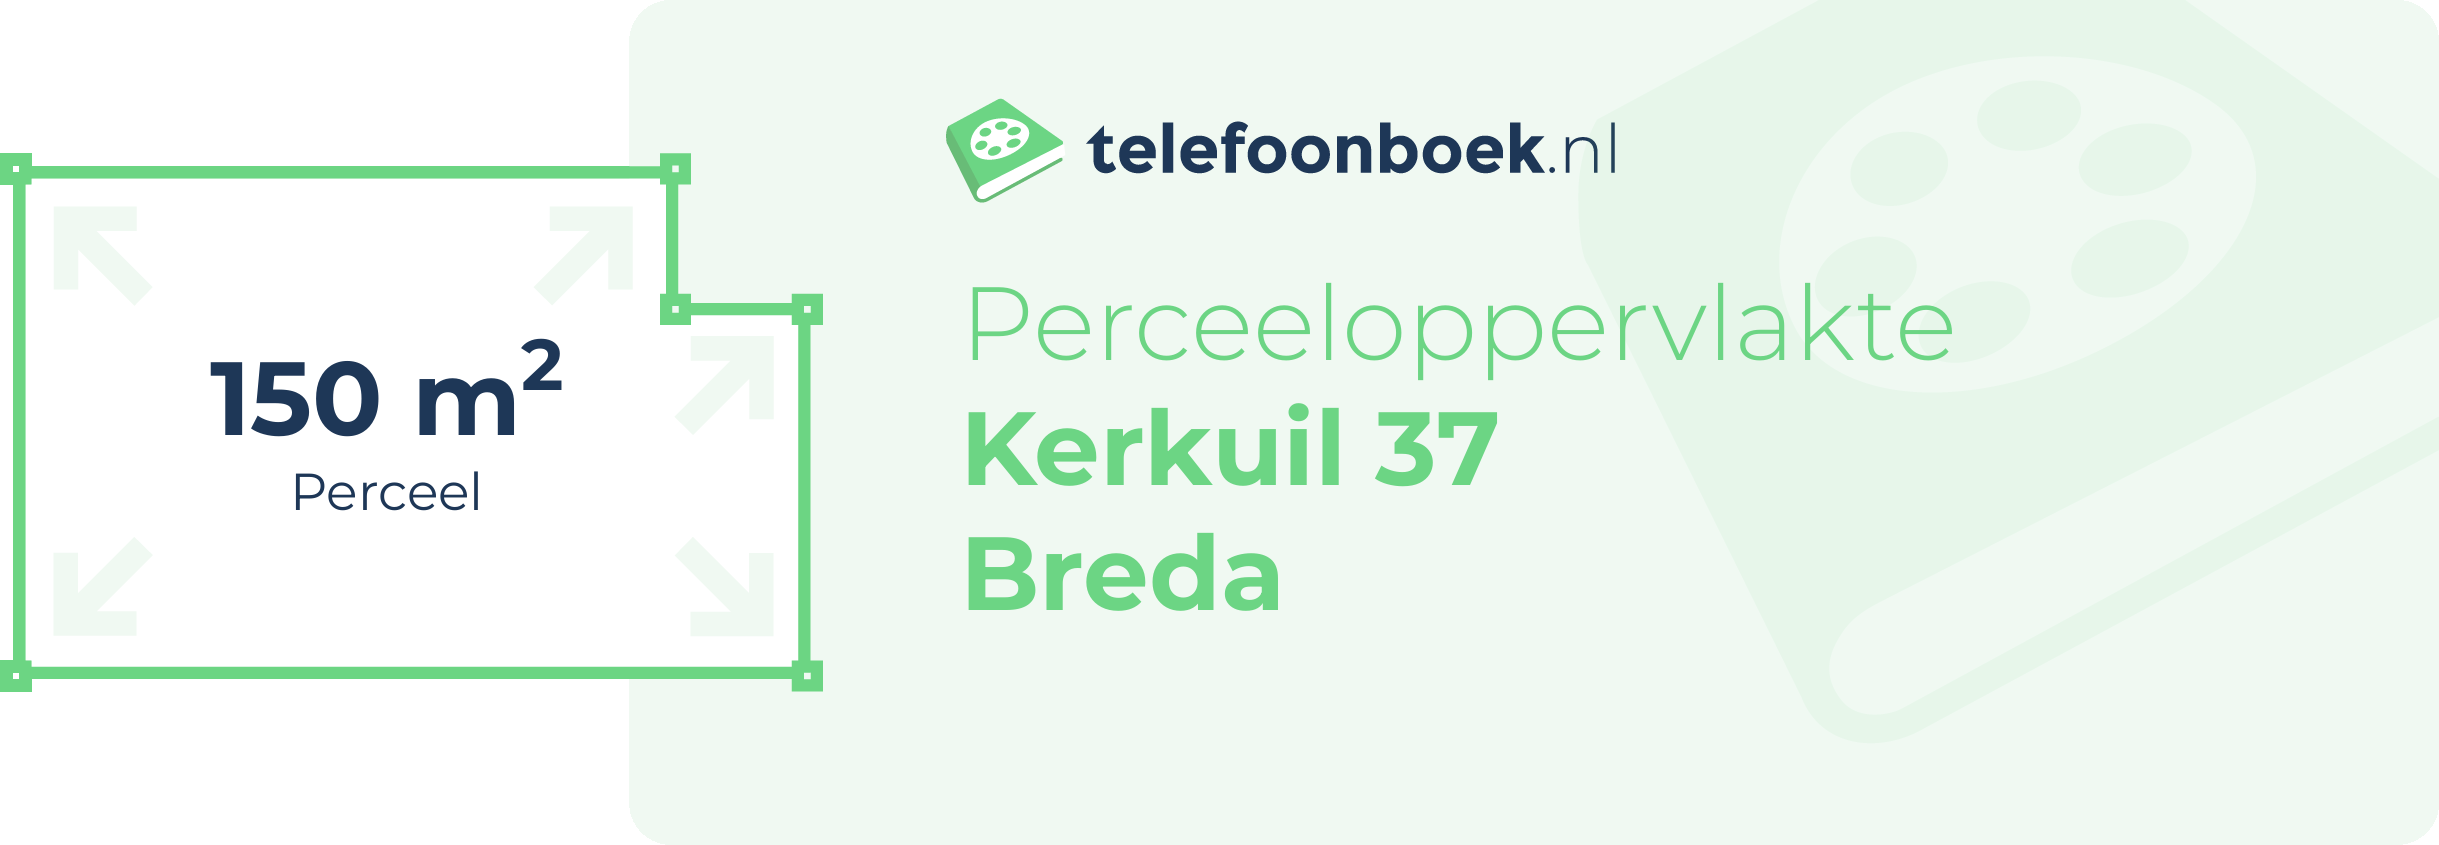 Perceeloppervlakte Kerkuil 37 Breda